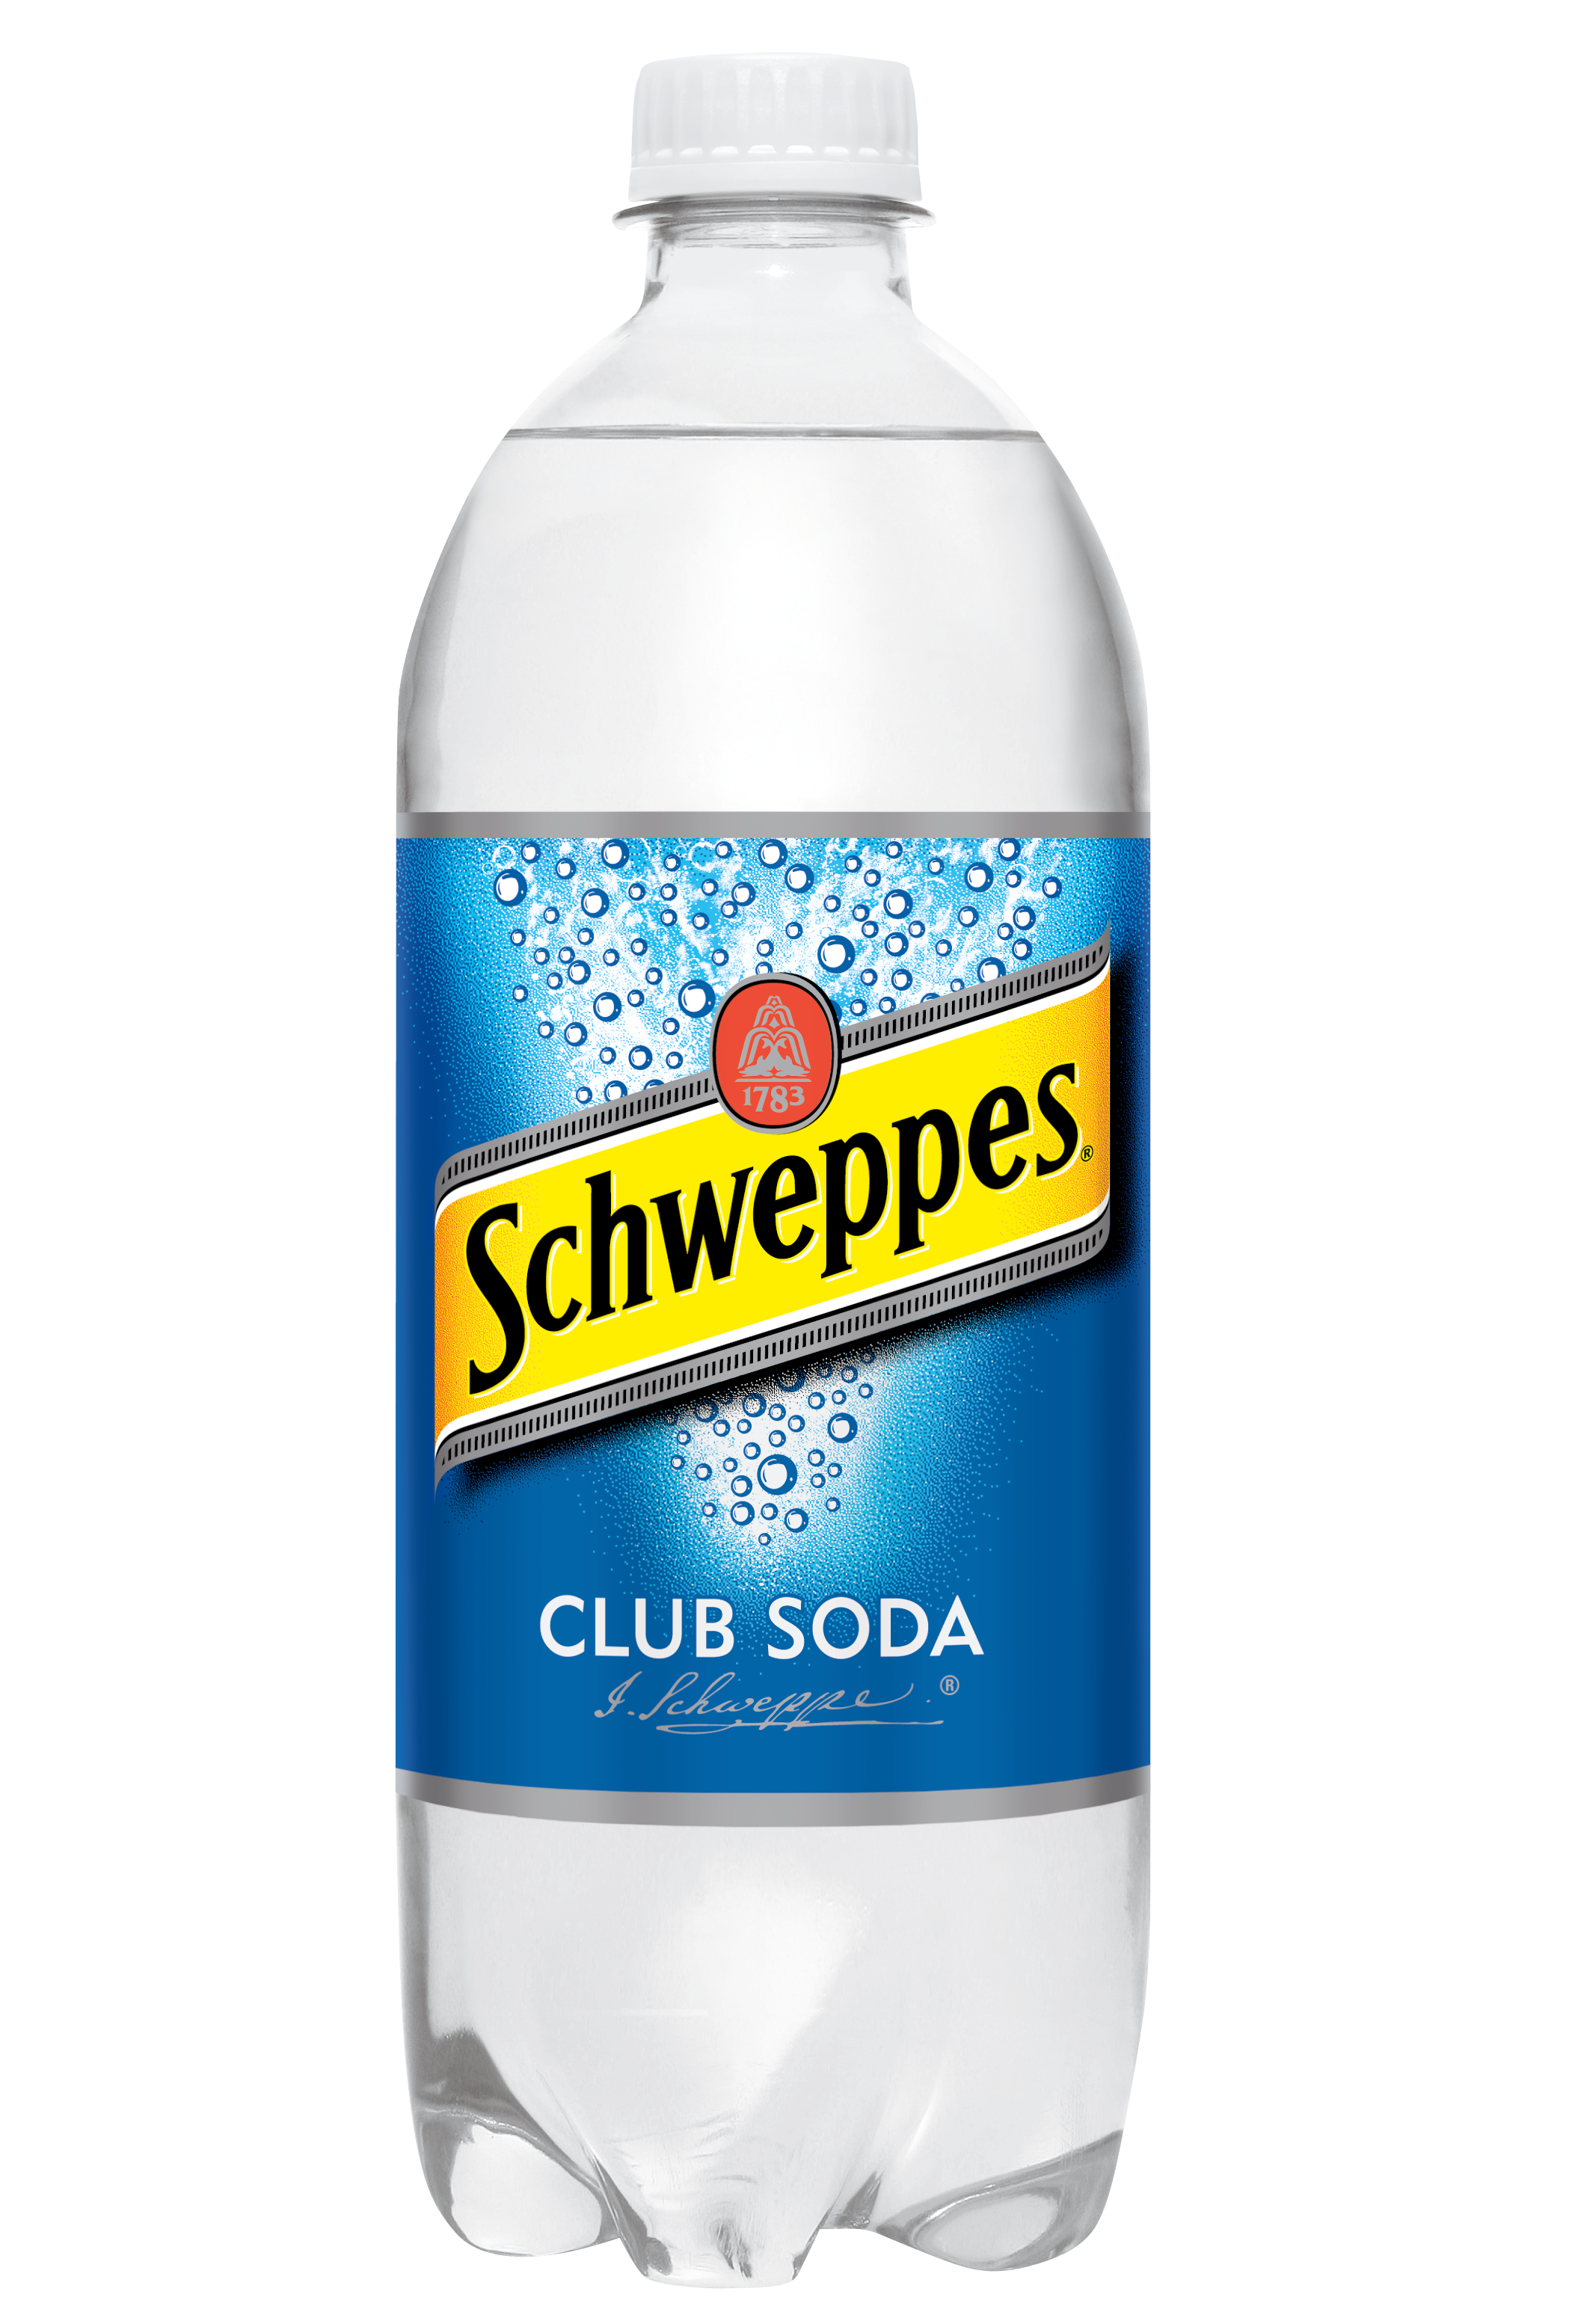 Содовая вода Schweppes. Швепс содовая. Содовая вода Швепс. Содовая вода для коктейлей. Вода газированная продажа